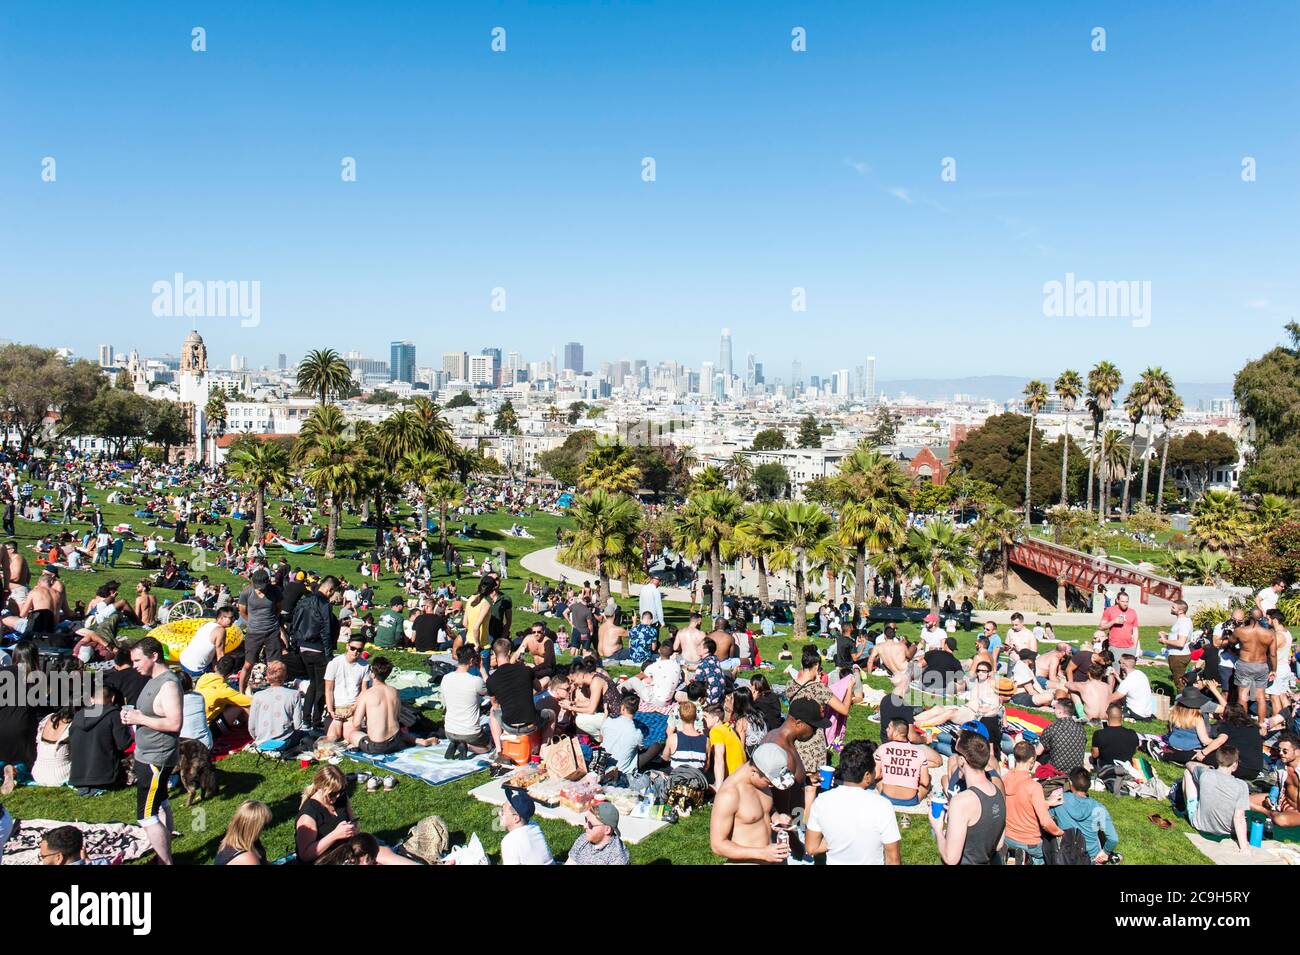 Beaucoup de gens se détendre, pique-niquer à Dolores Park, Mission District, San Francisco, Californie, Etats-Unis Banque D'Images